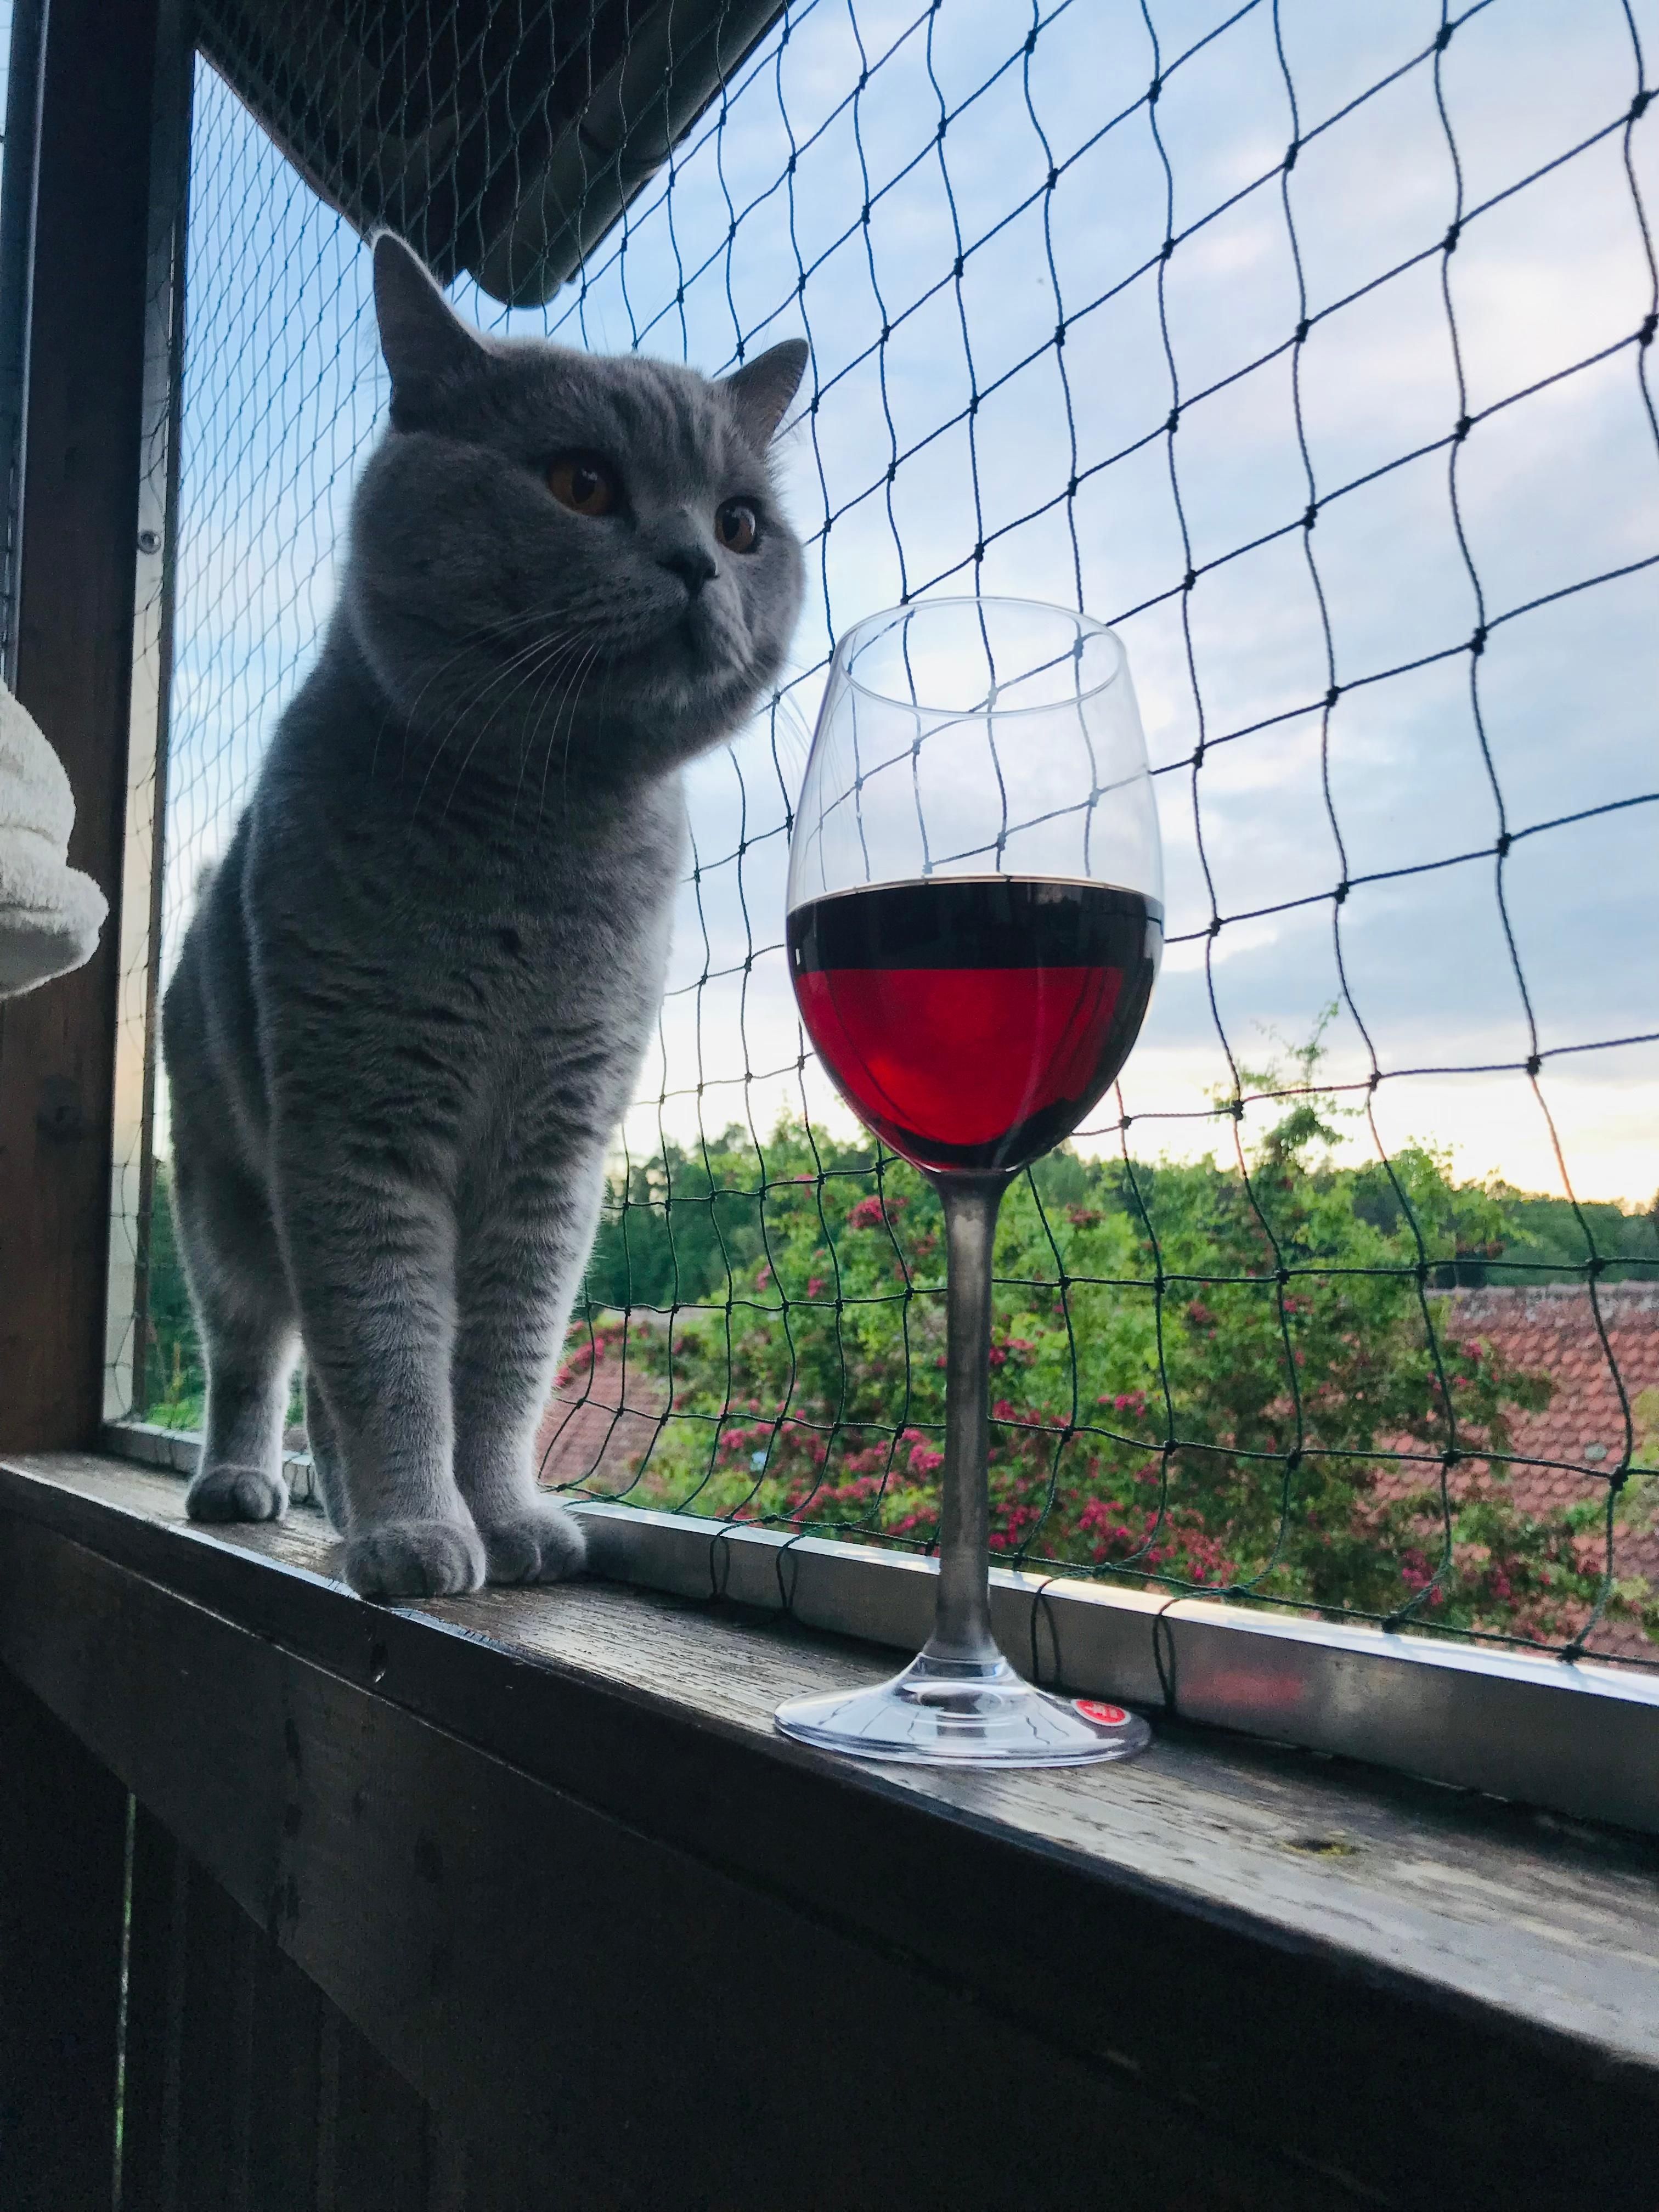 cats & wine, da sag ich nicht nein
#livingchallenge #metime
